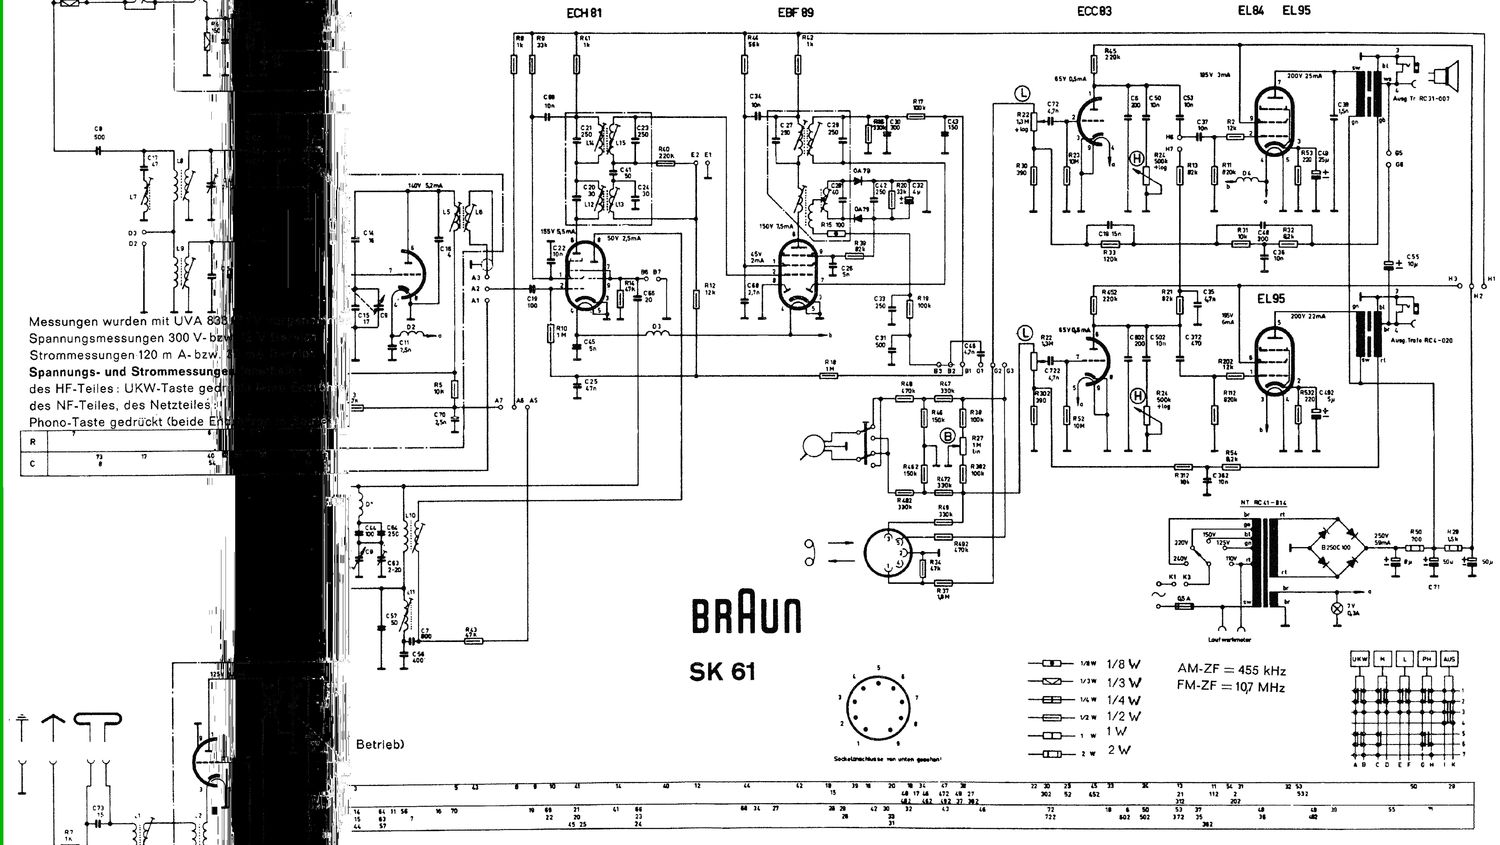 Braun SK 61 Schematic